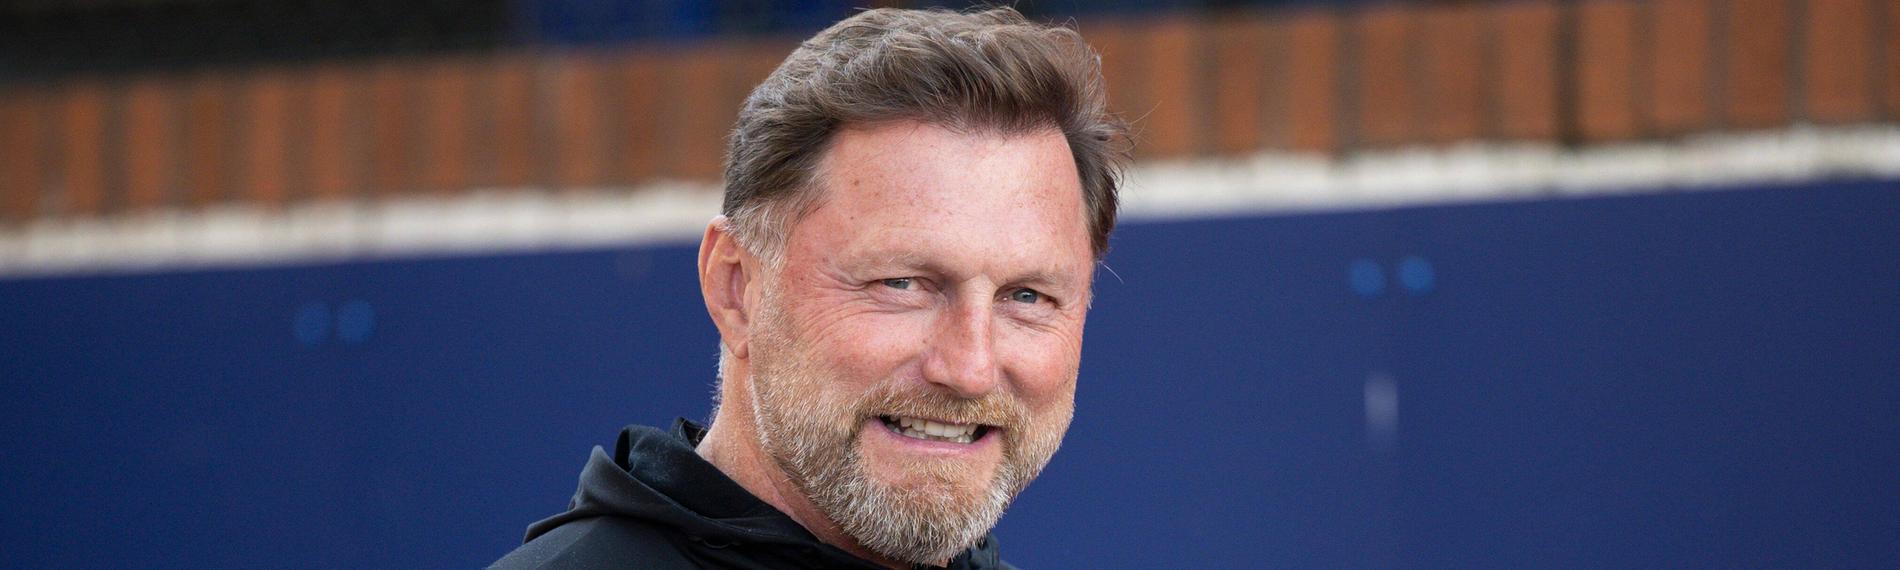 Ralph Hasenhüttl, der neue Trainer von VfL Wolfsburg.